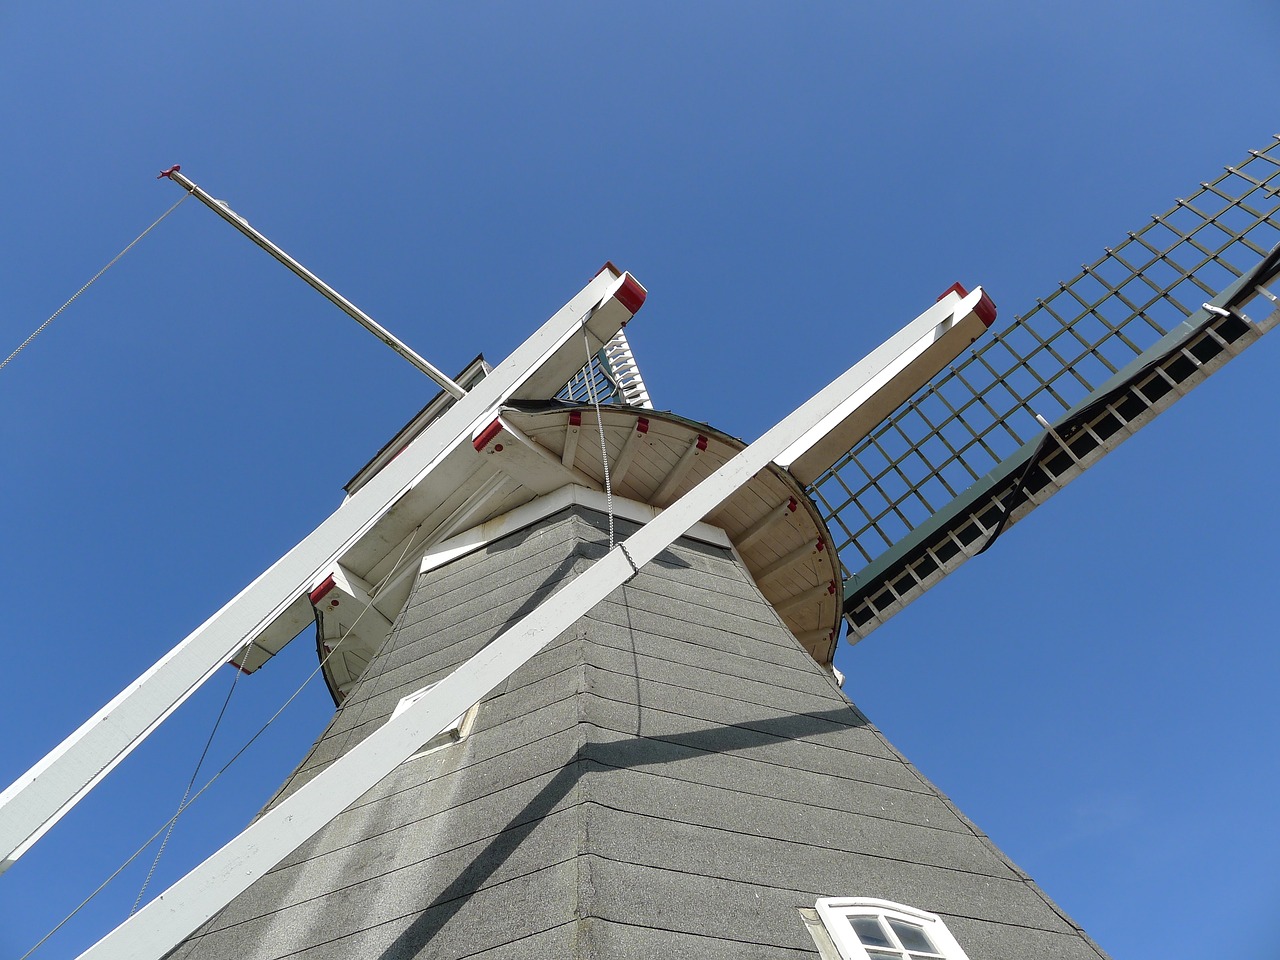 rysumer mühle windmill rysum free photo